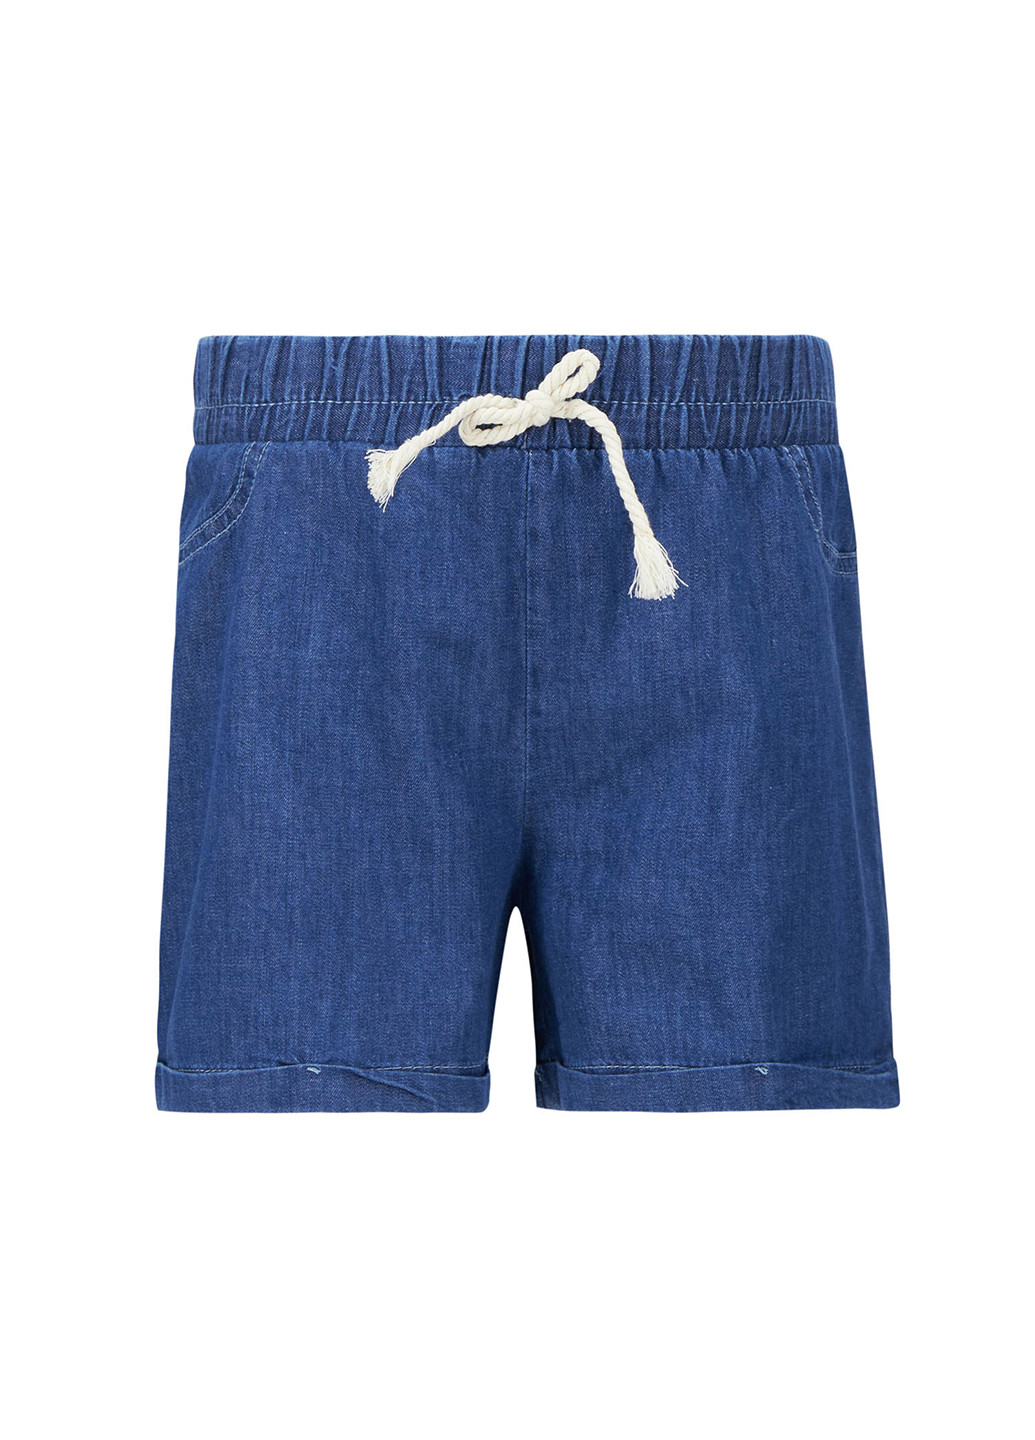 Шорты DeFacto тёмно-синие джинсовые хлопок